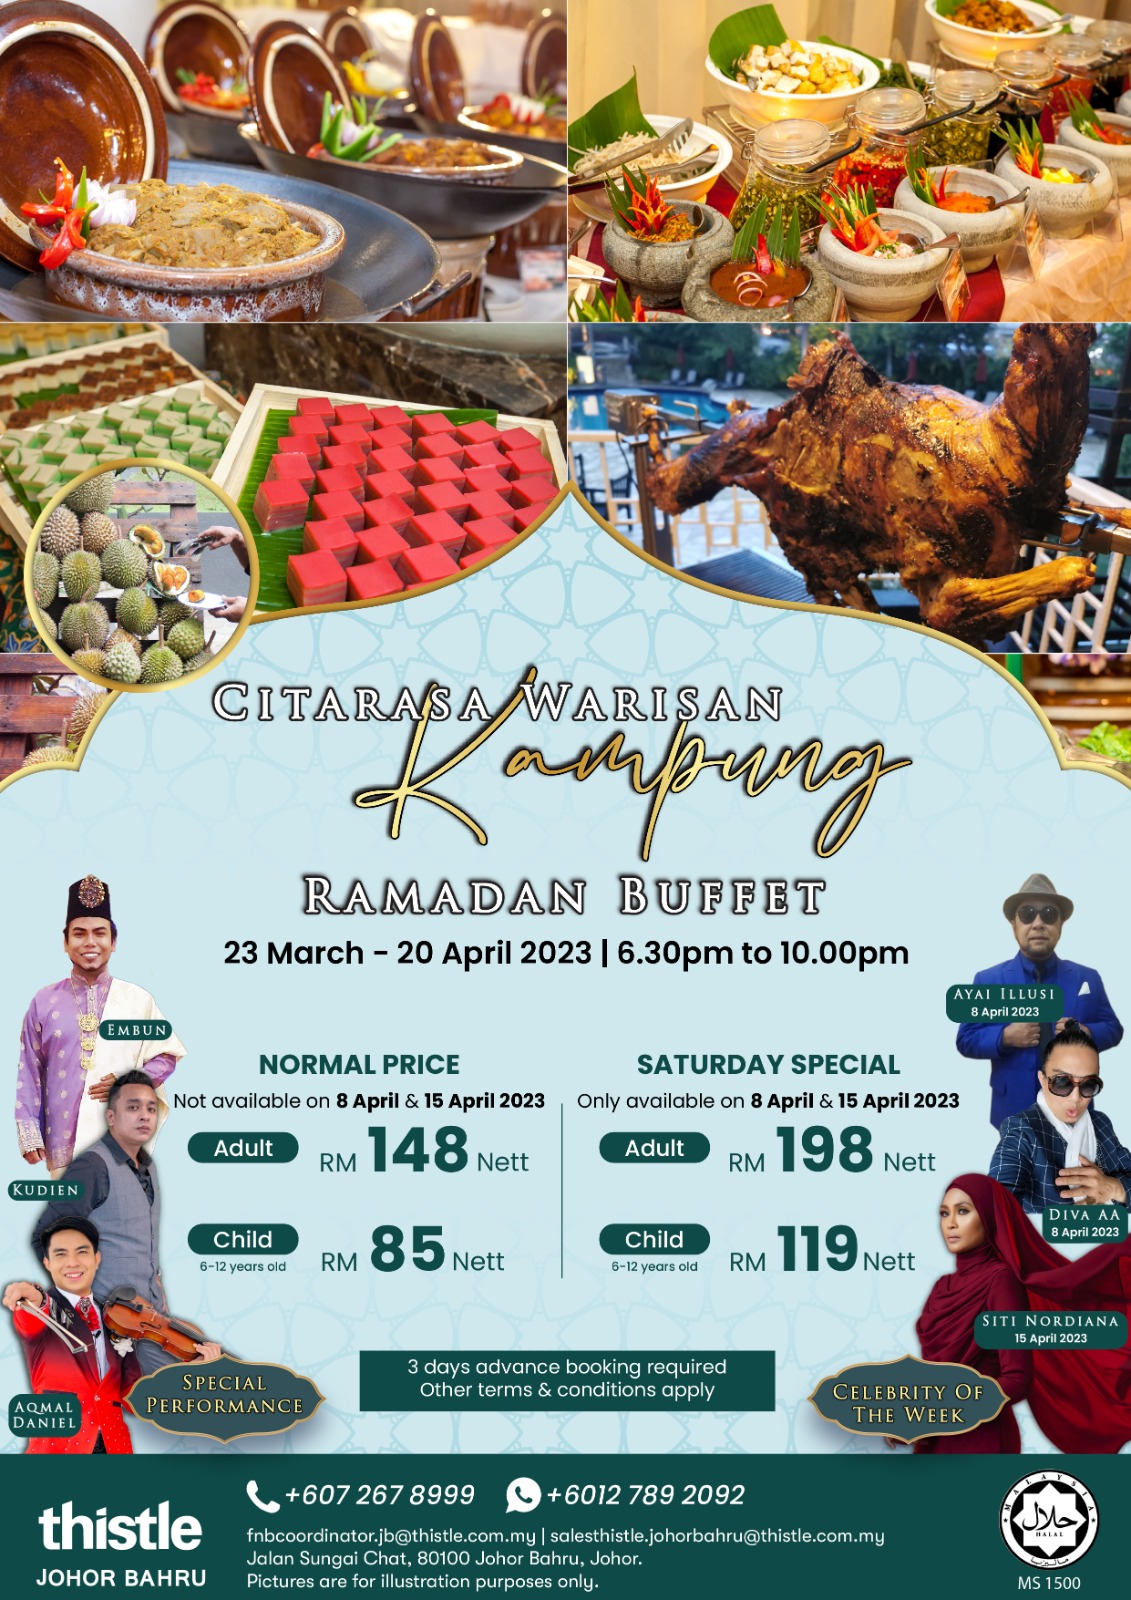 Buffet Ramadan 2023 – Citarasa Warisan Kampung di Thistle Johor Bahru